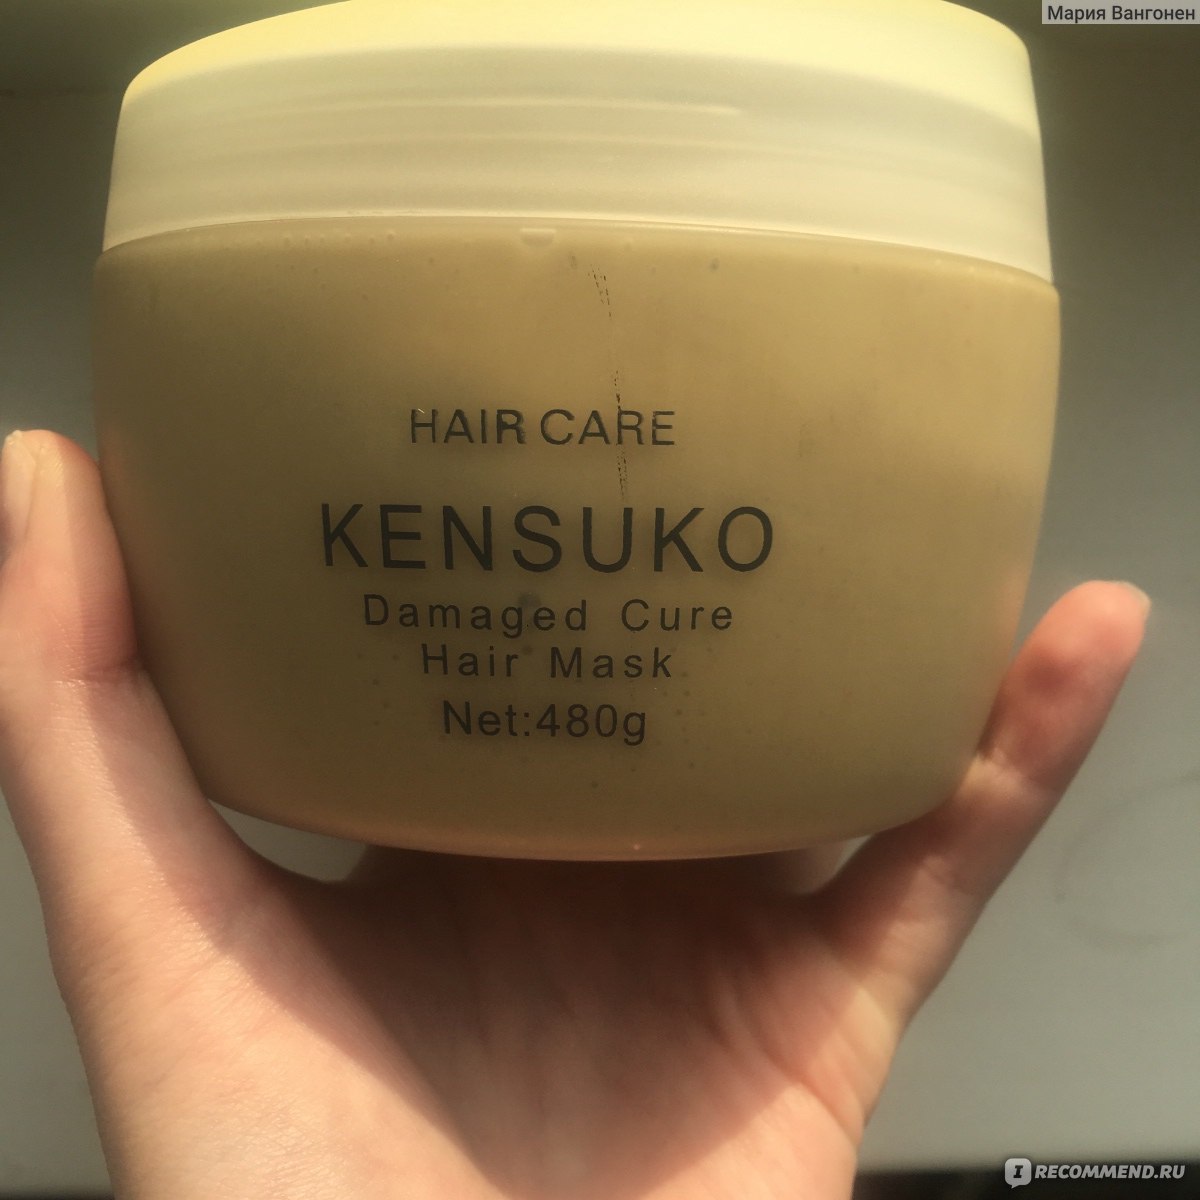 Kensuko оттеночный. Kensuko Crystal маска. Kensuko маска для поврежденных волос. Kensuko восстанавливающая маска. Kensuko бальзам для волос.